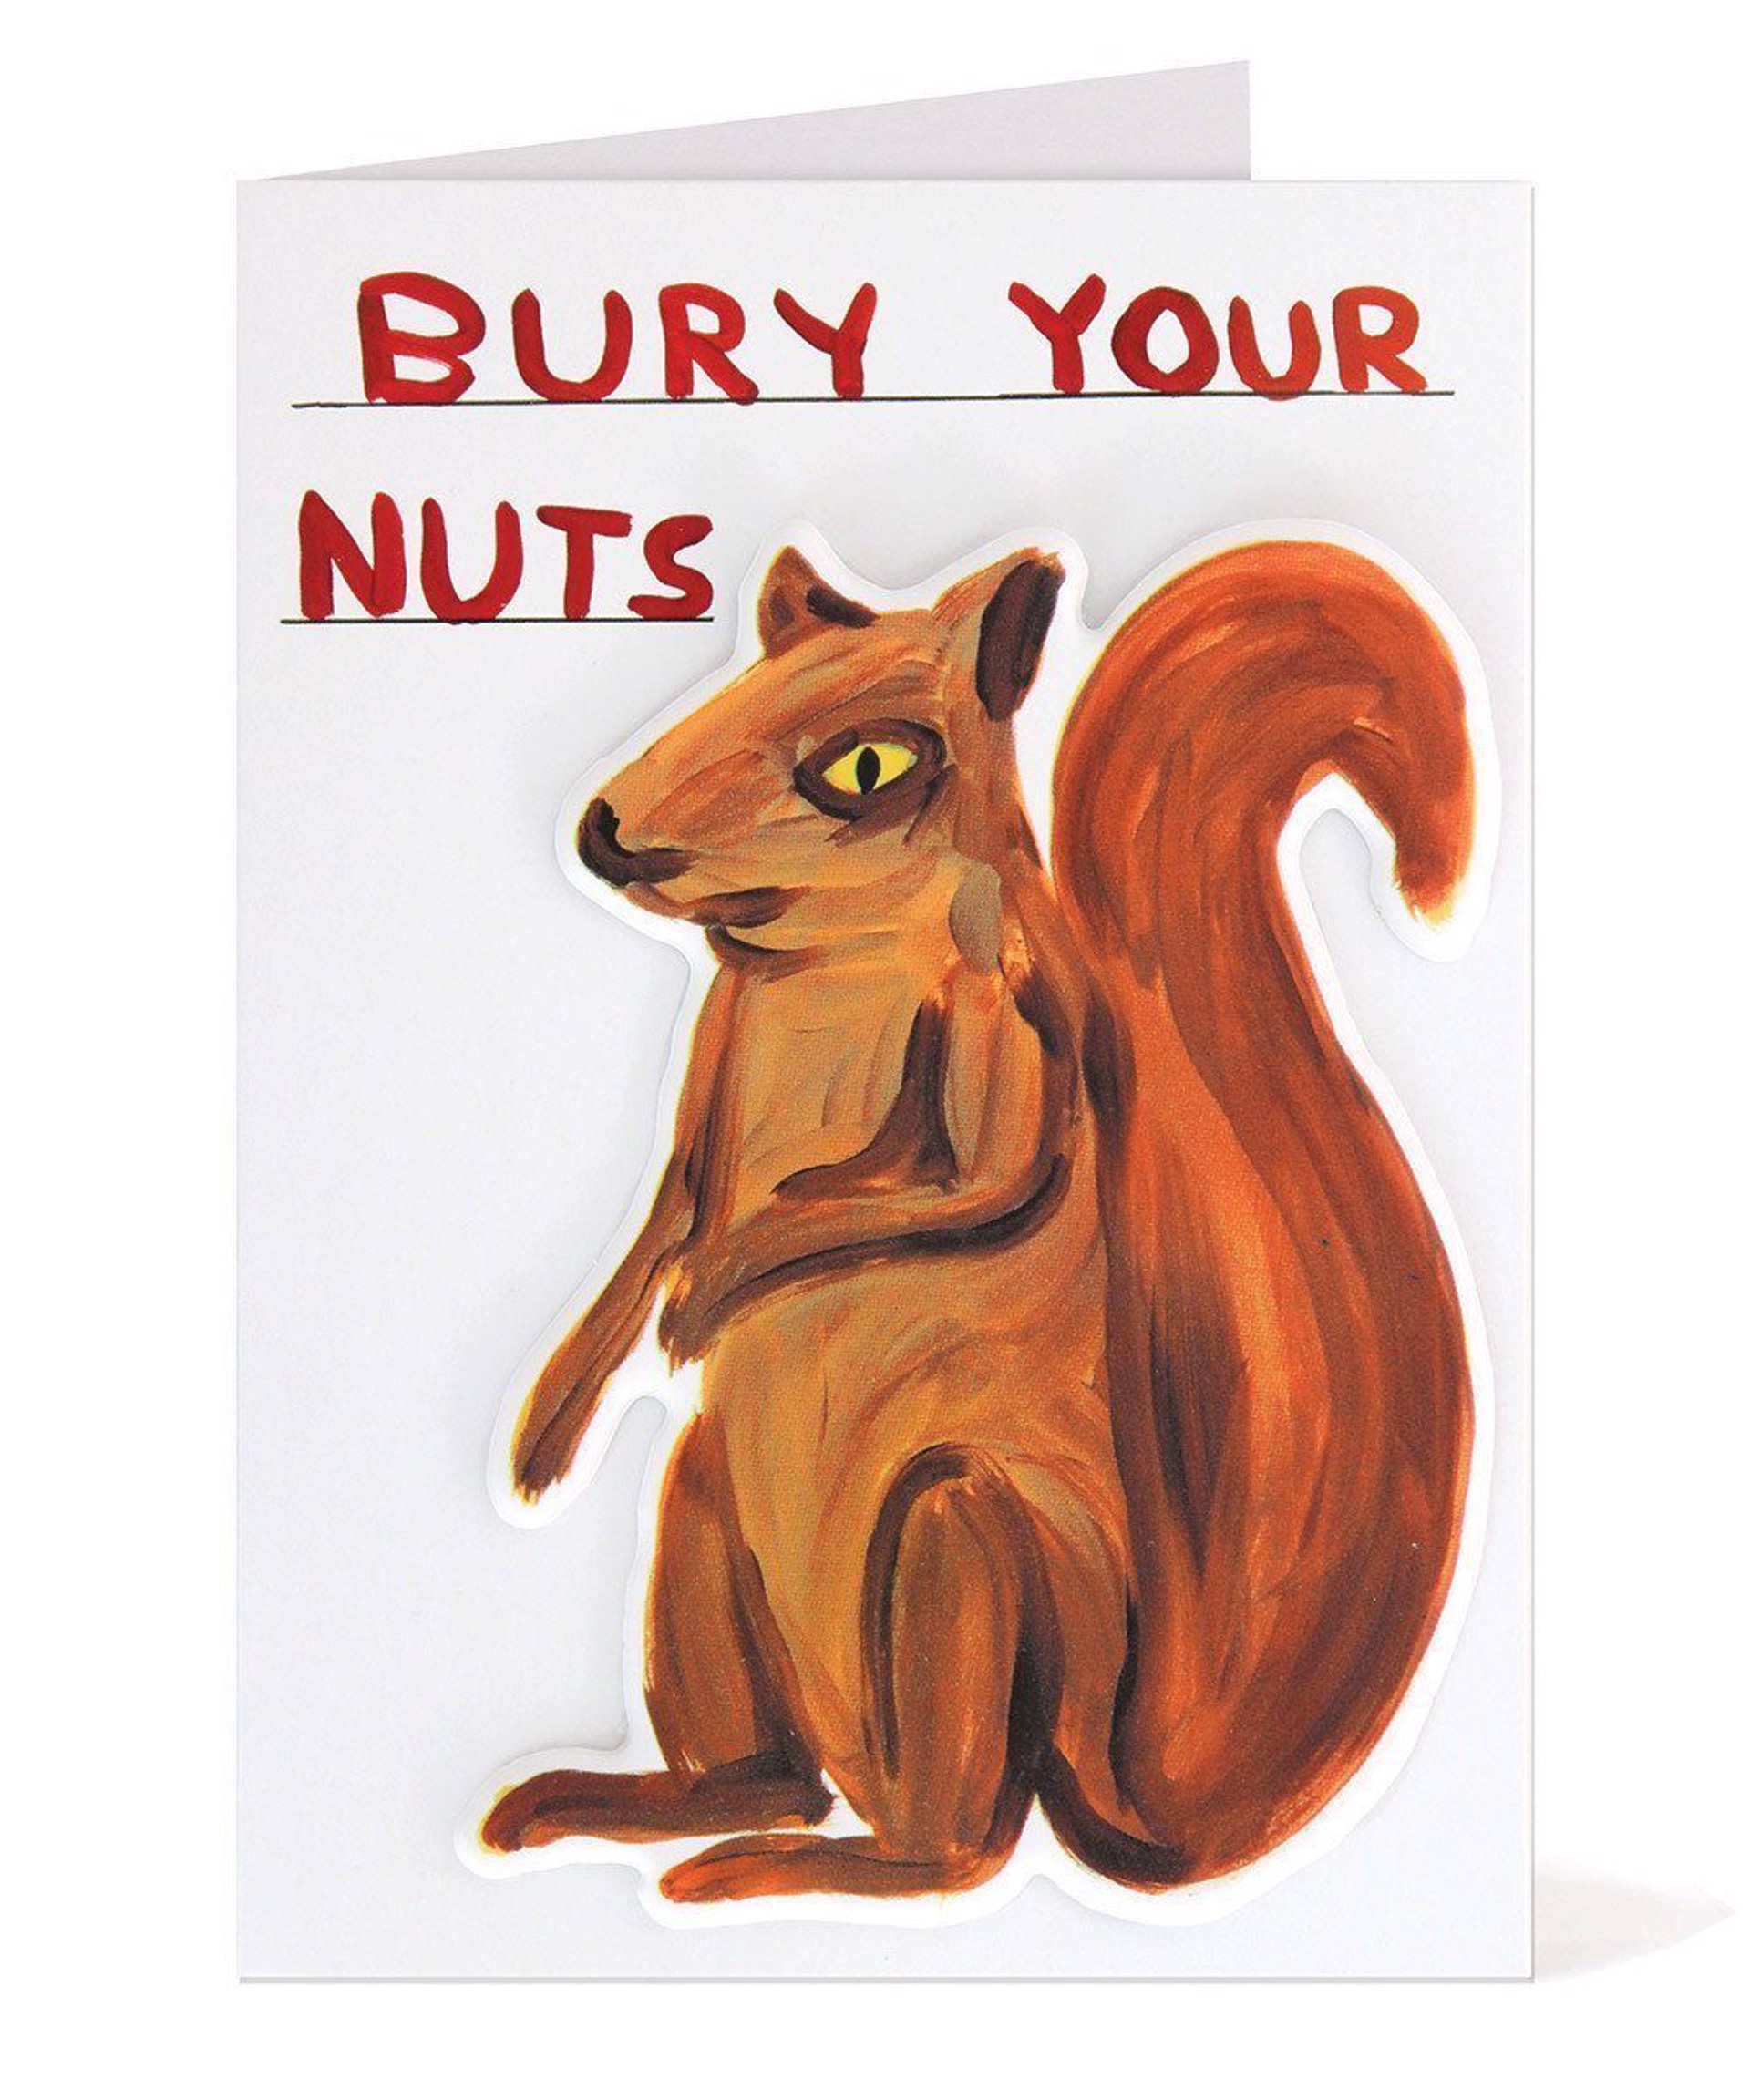 Bury Your Nuts Puffy Sticker Card by David Shrigley